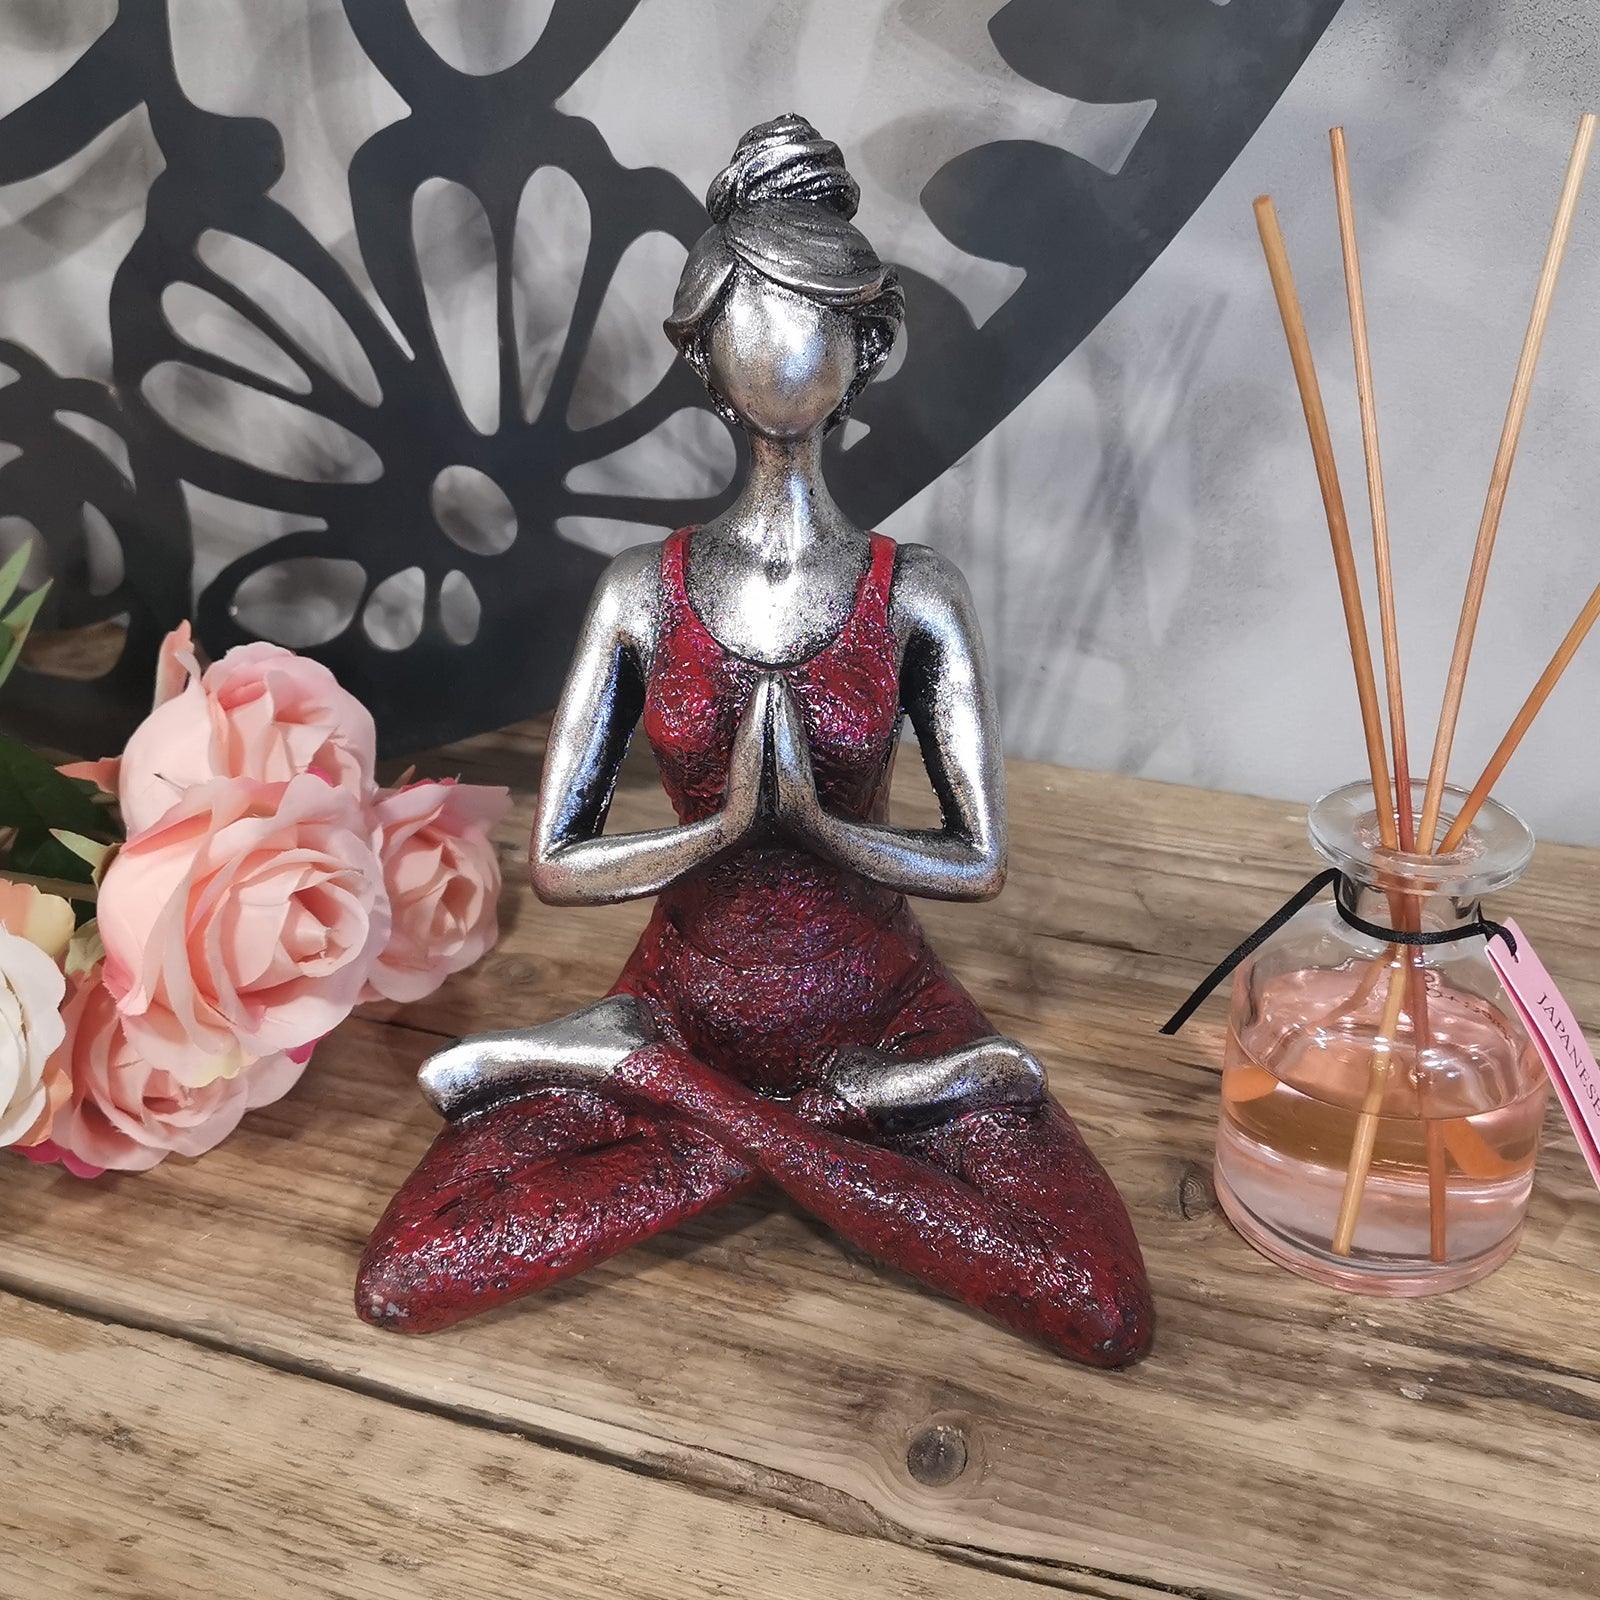 Yoga Lady Figure - Silver & Bordeaux 24cm - Charming Spaces